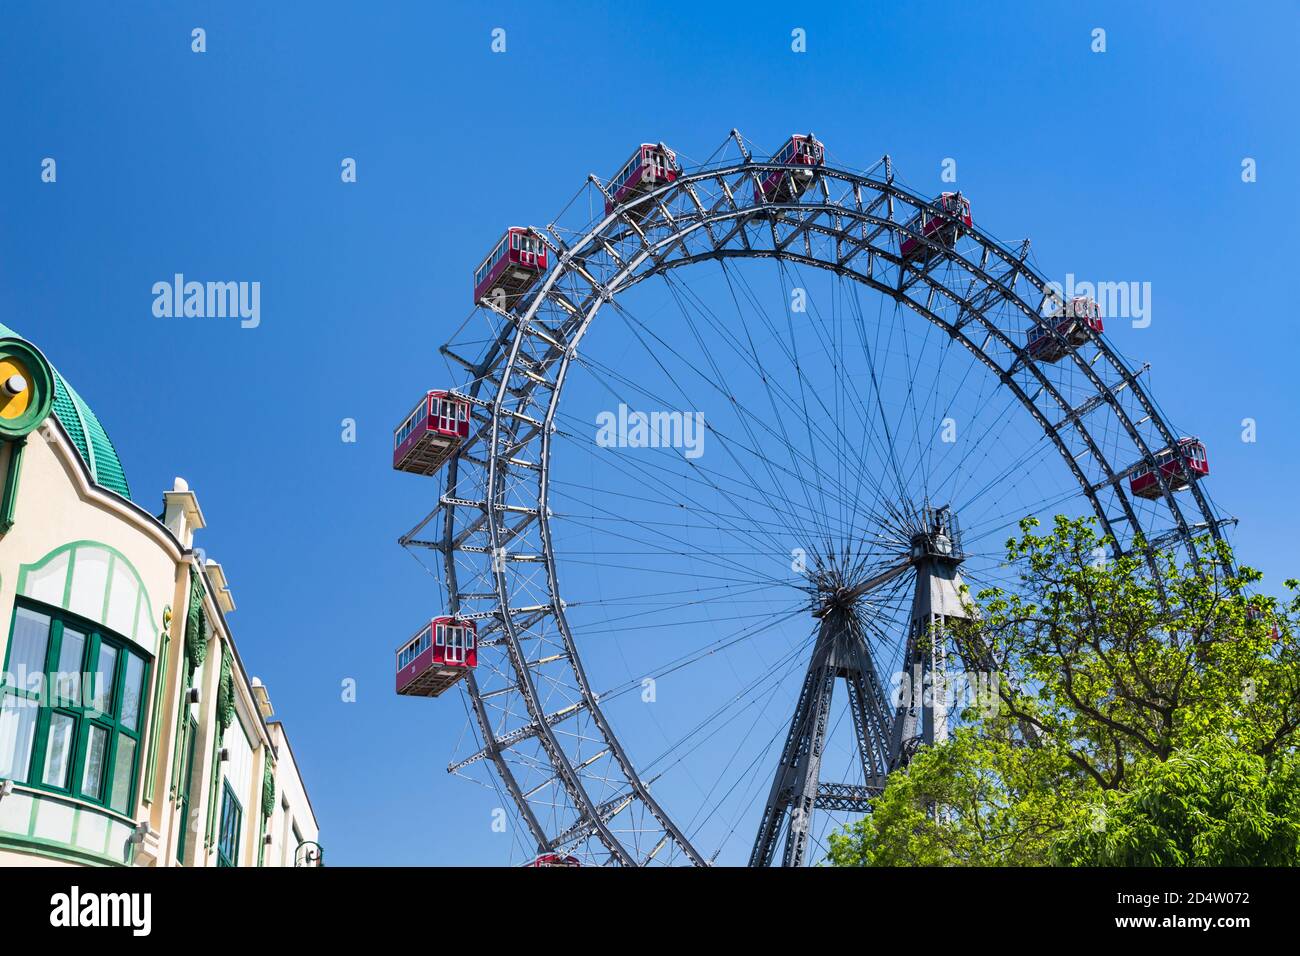 VIENNE - 6 MAI : vue sur la célèbre roue de ferris Wiener Riesenrad dans le parc d'attractions Prater à Vienne, Autriche, le 6 mai 2018 Banque D'Images